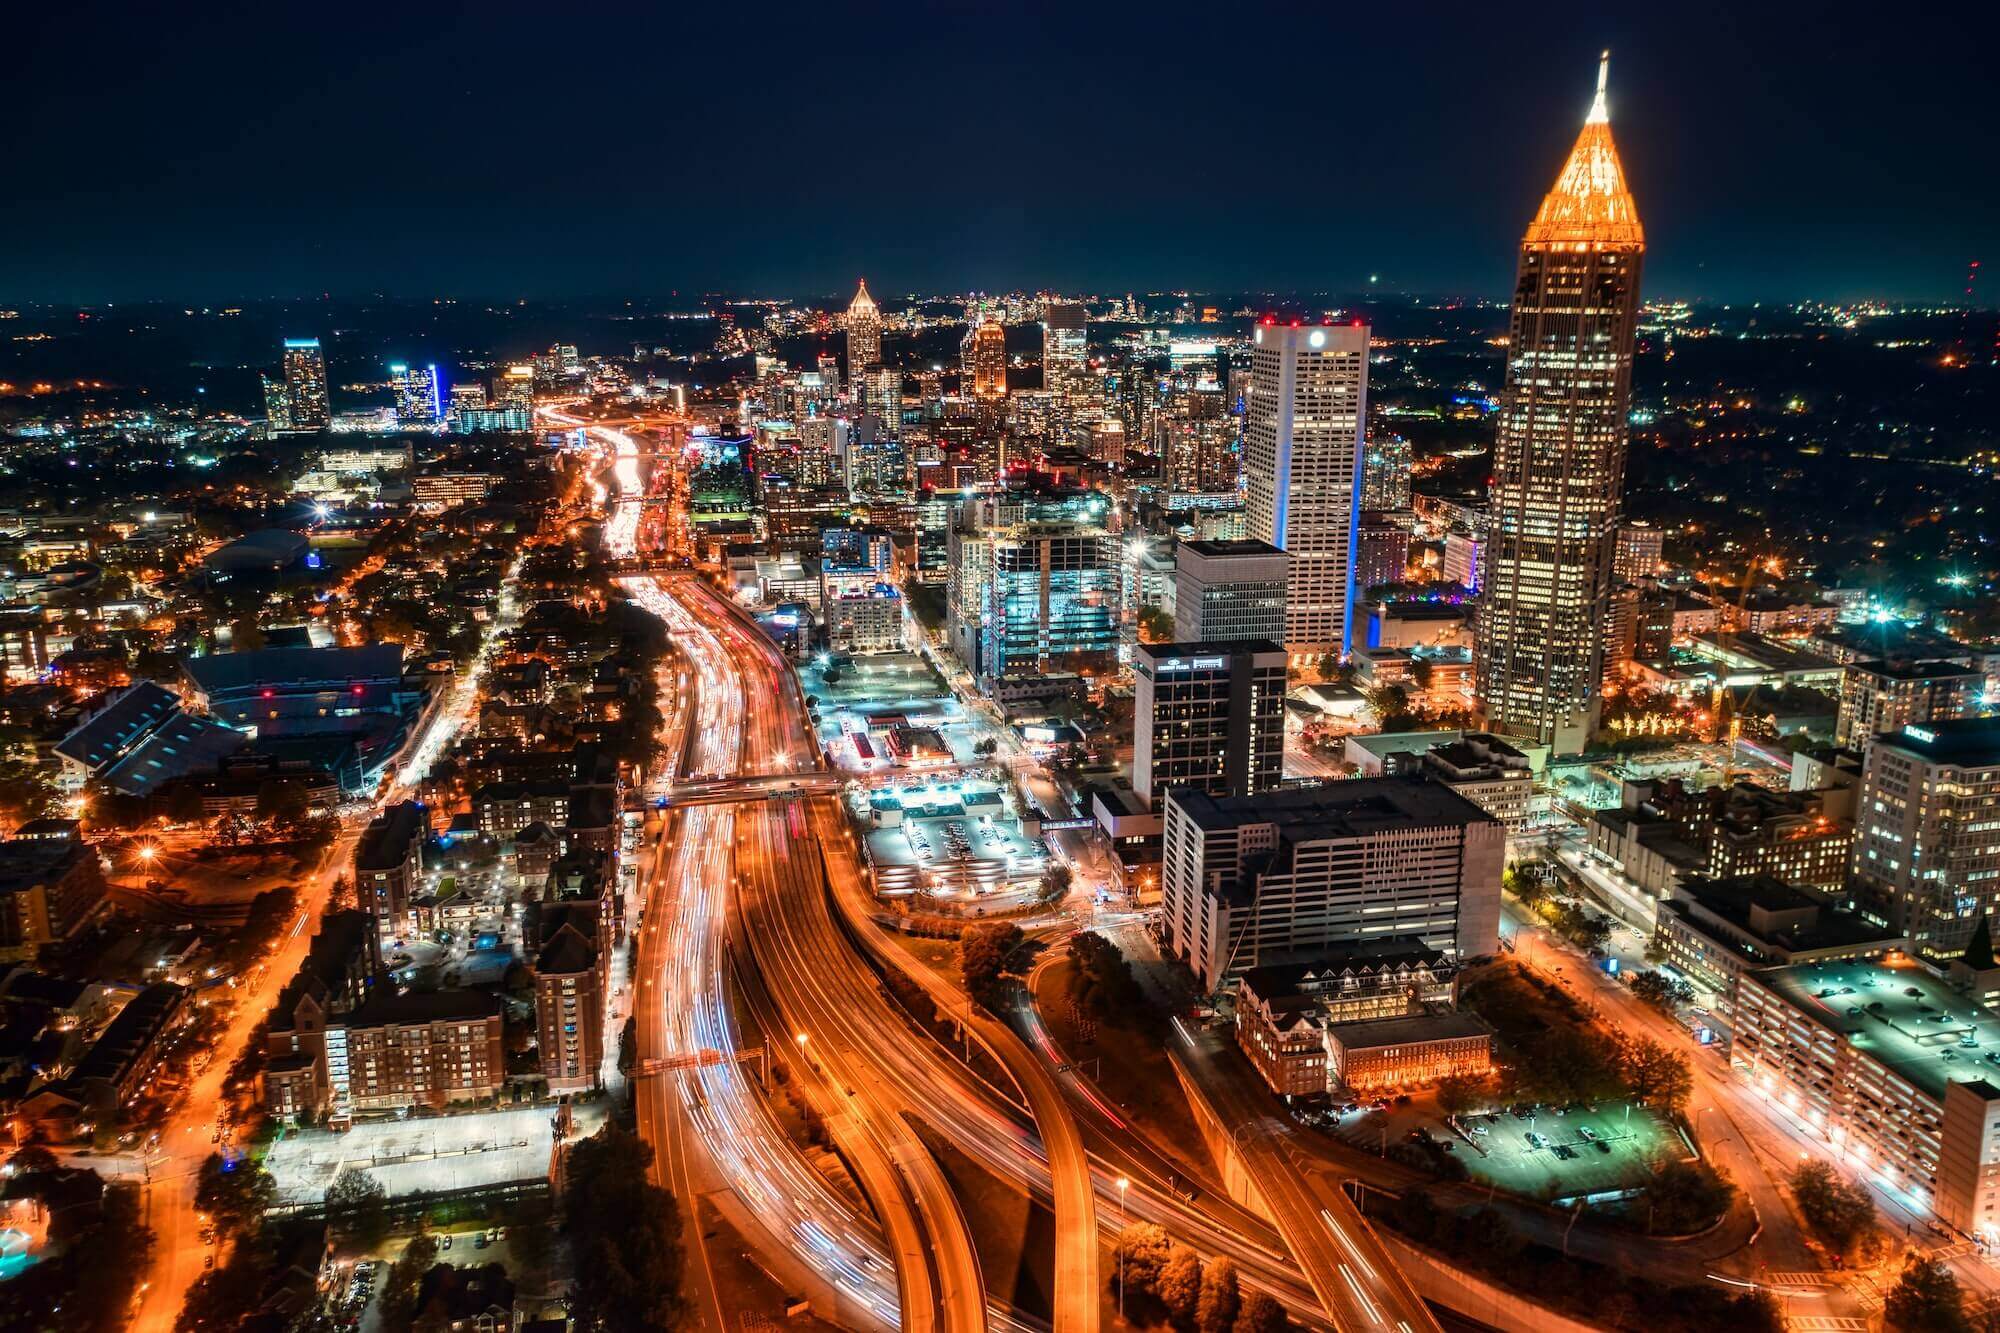 Downtown Atlanta at night